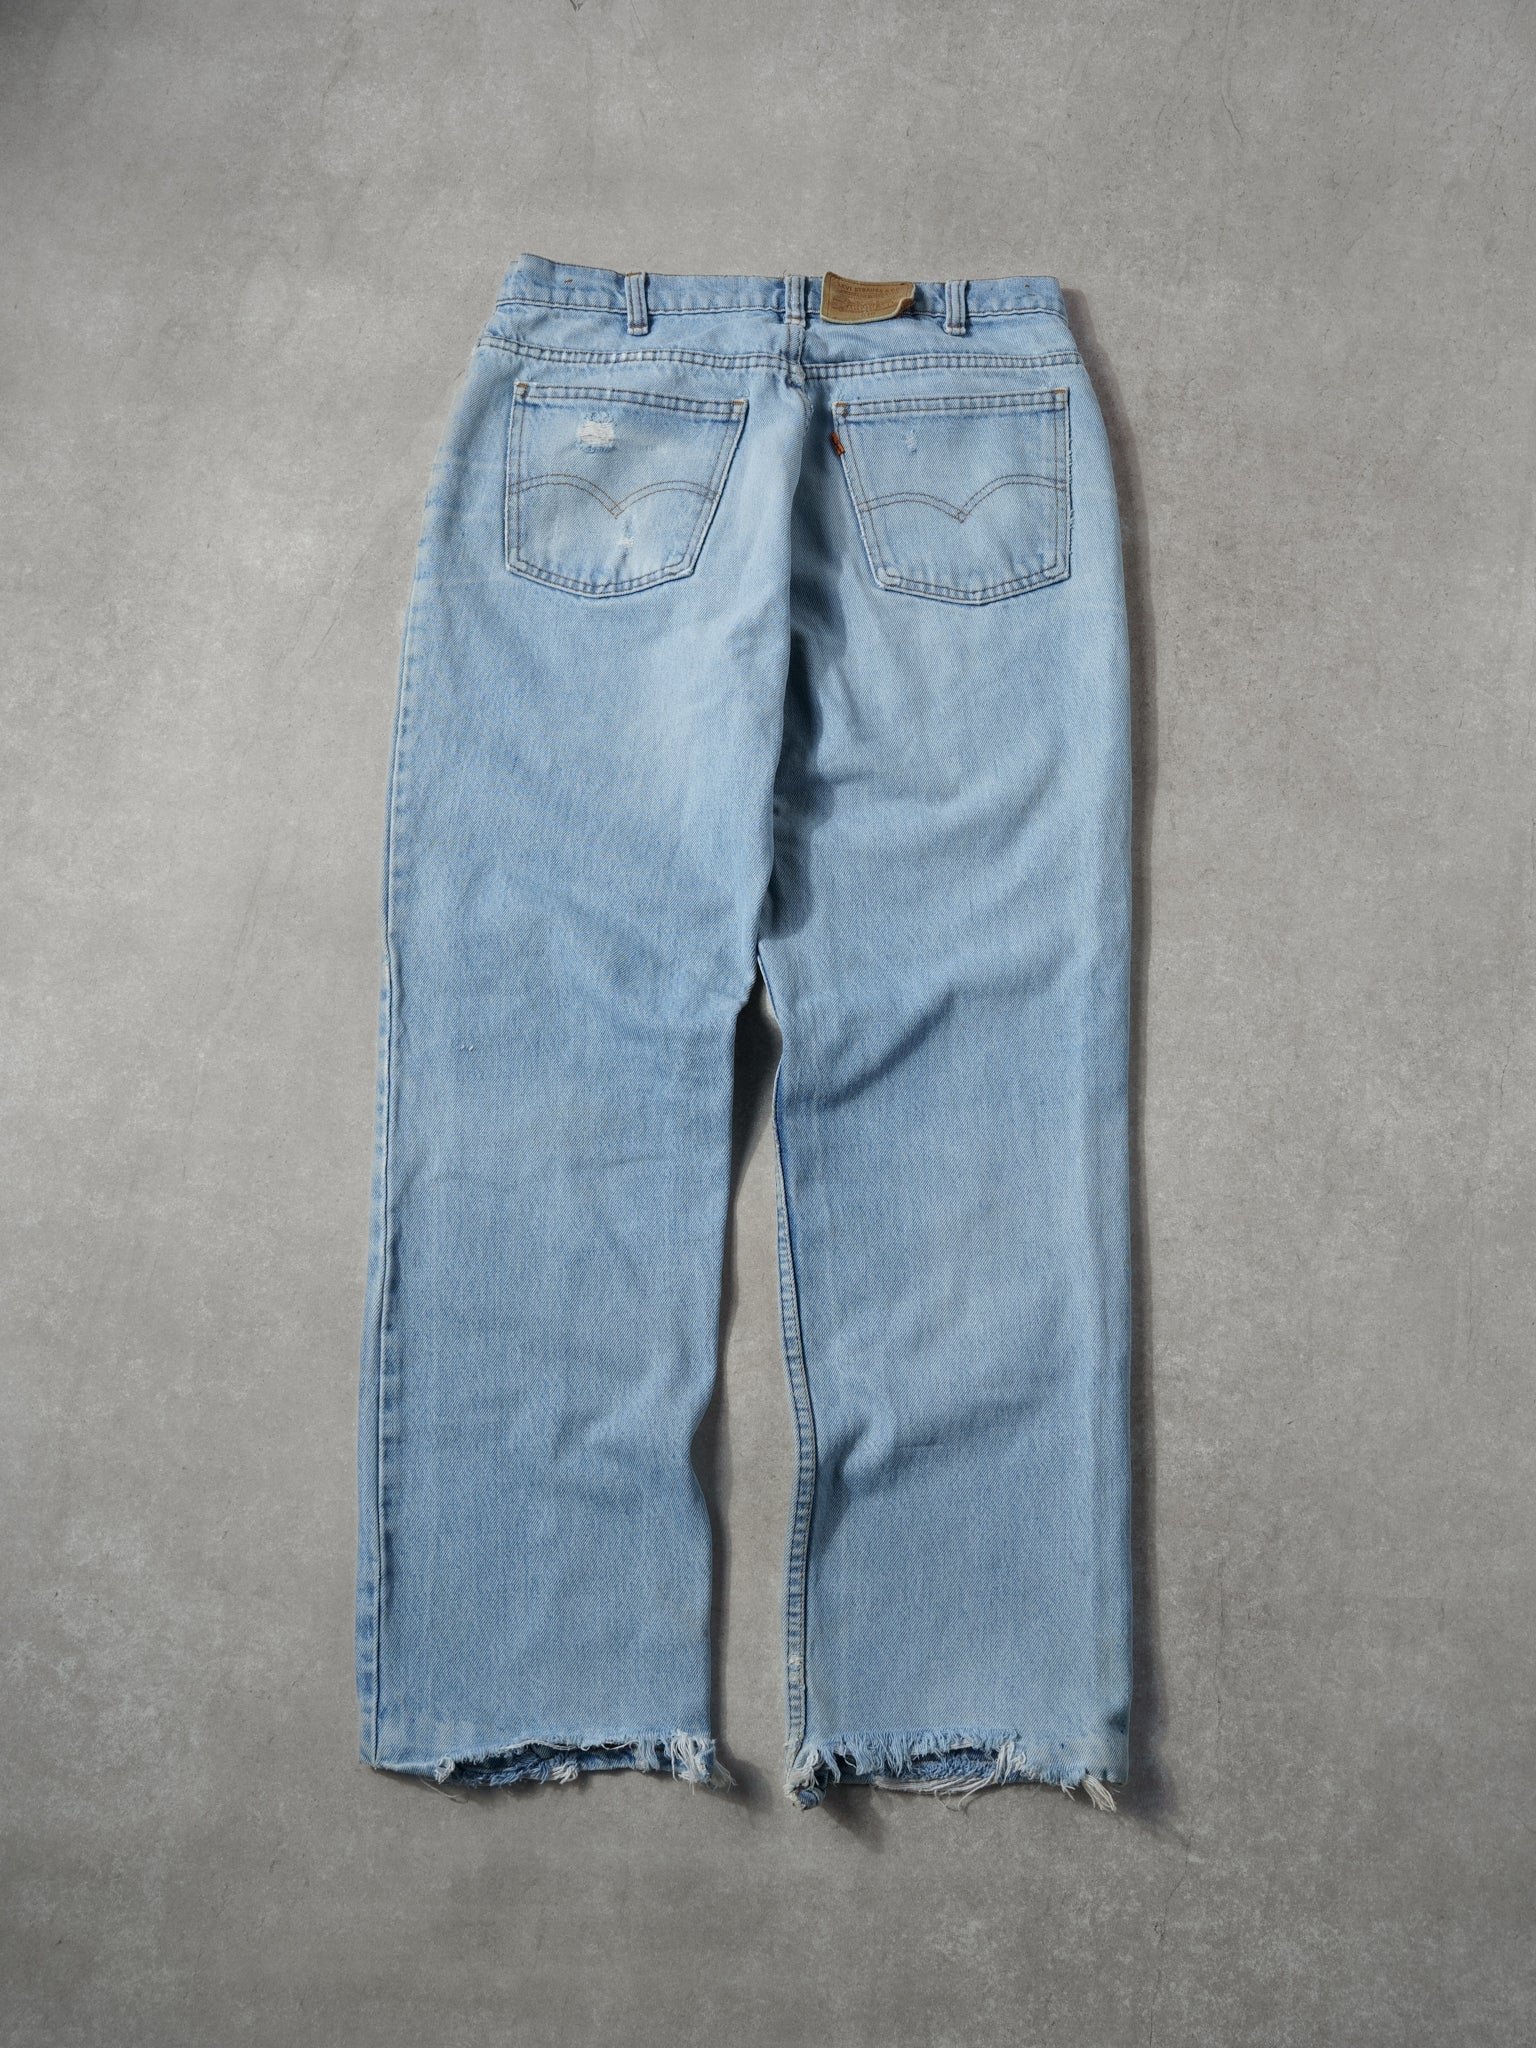 Vintage 70s Light Washed Blue Levi's 619 Denim Jeans (32x28)